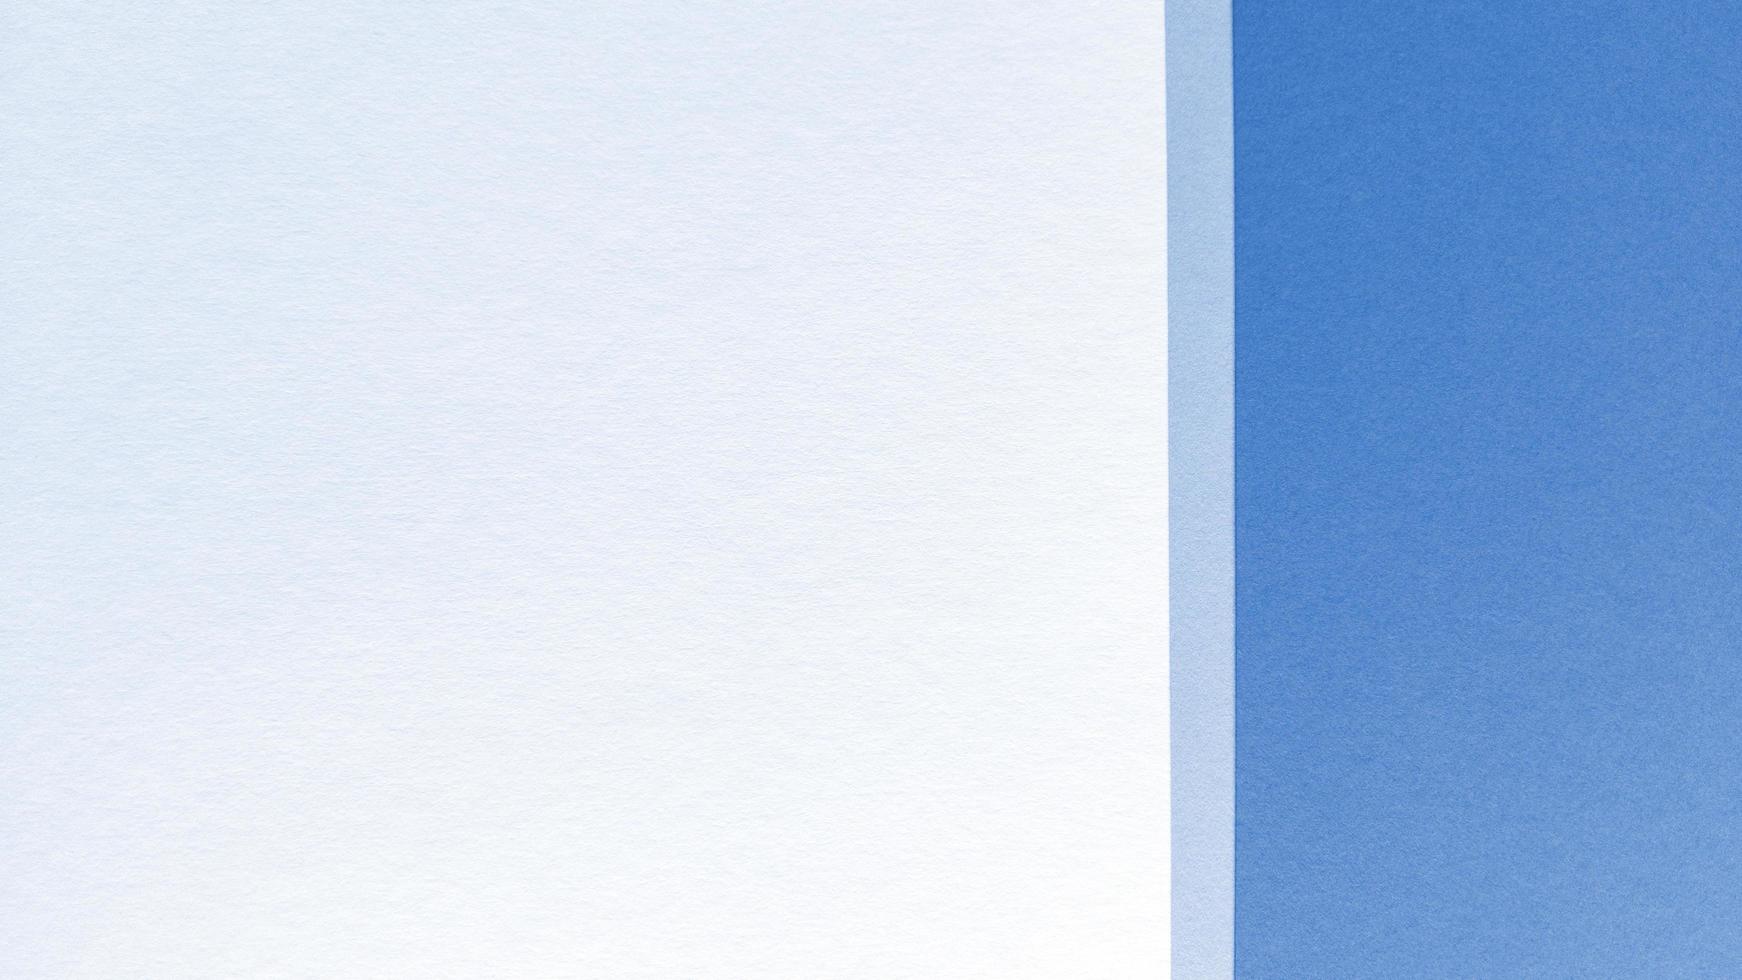 camada plana simples com textura pastel. fundo de papel azul e branco. foto. foto